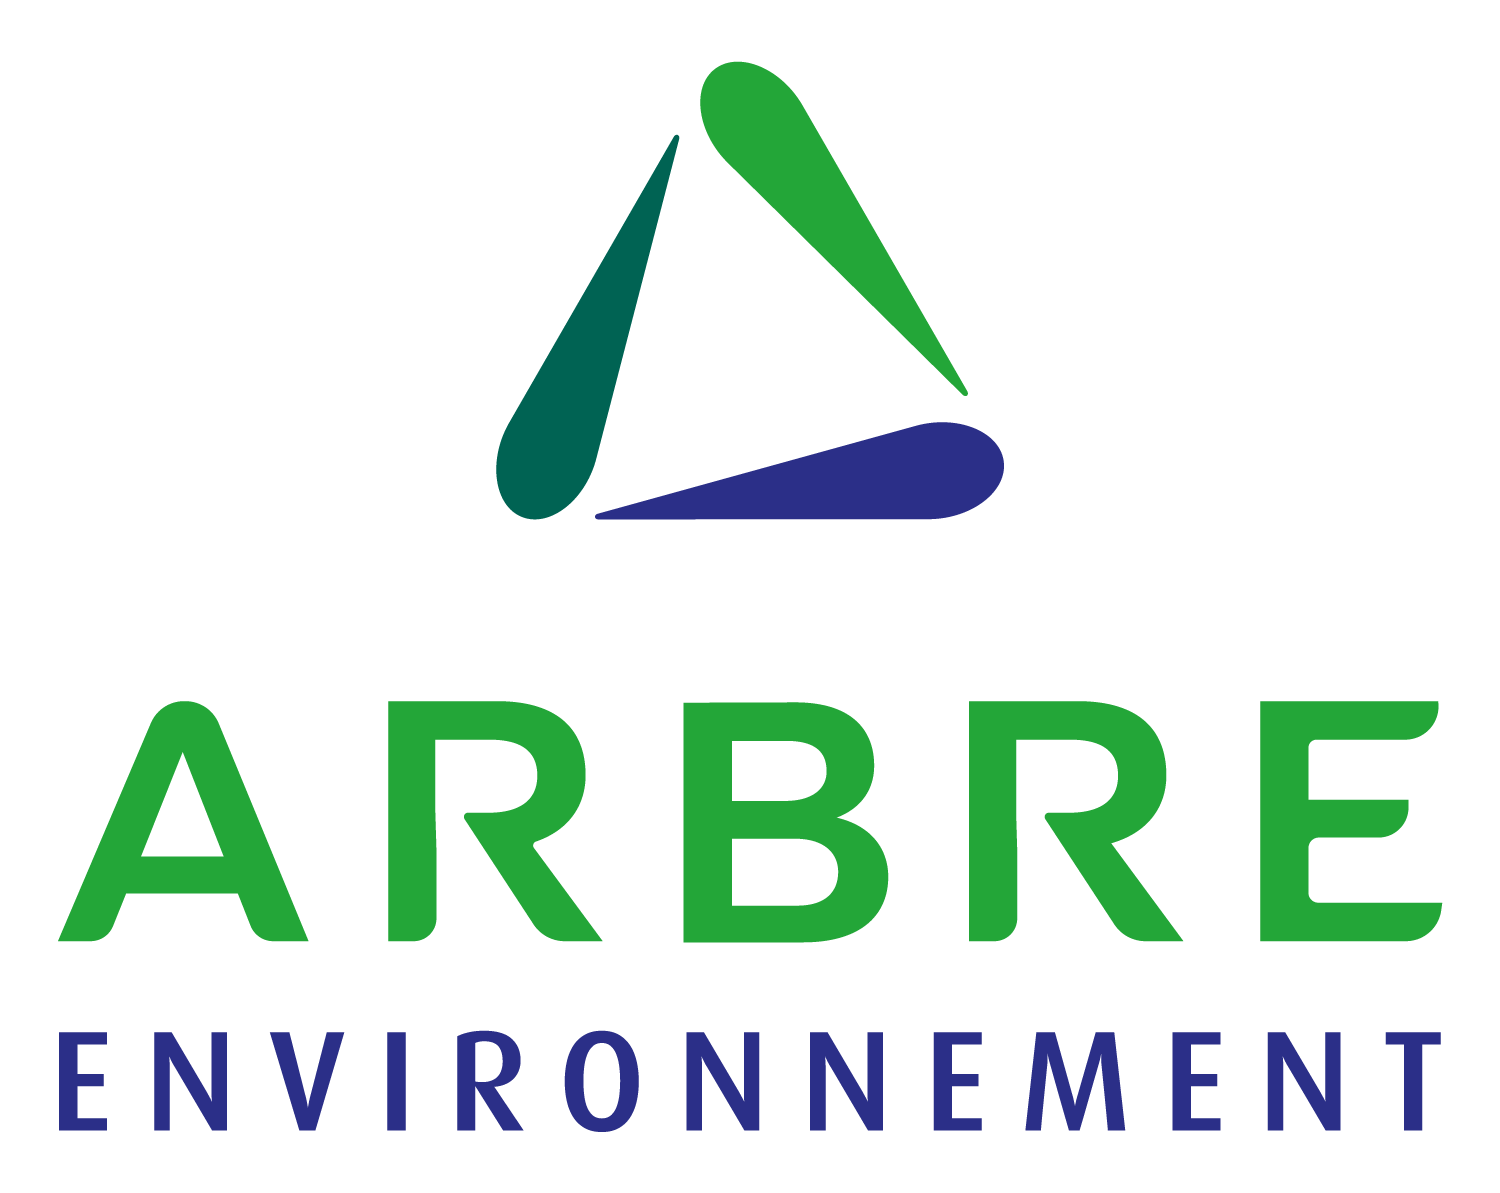 Création du logo Arbre environnement